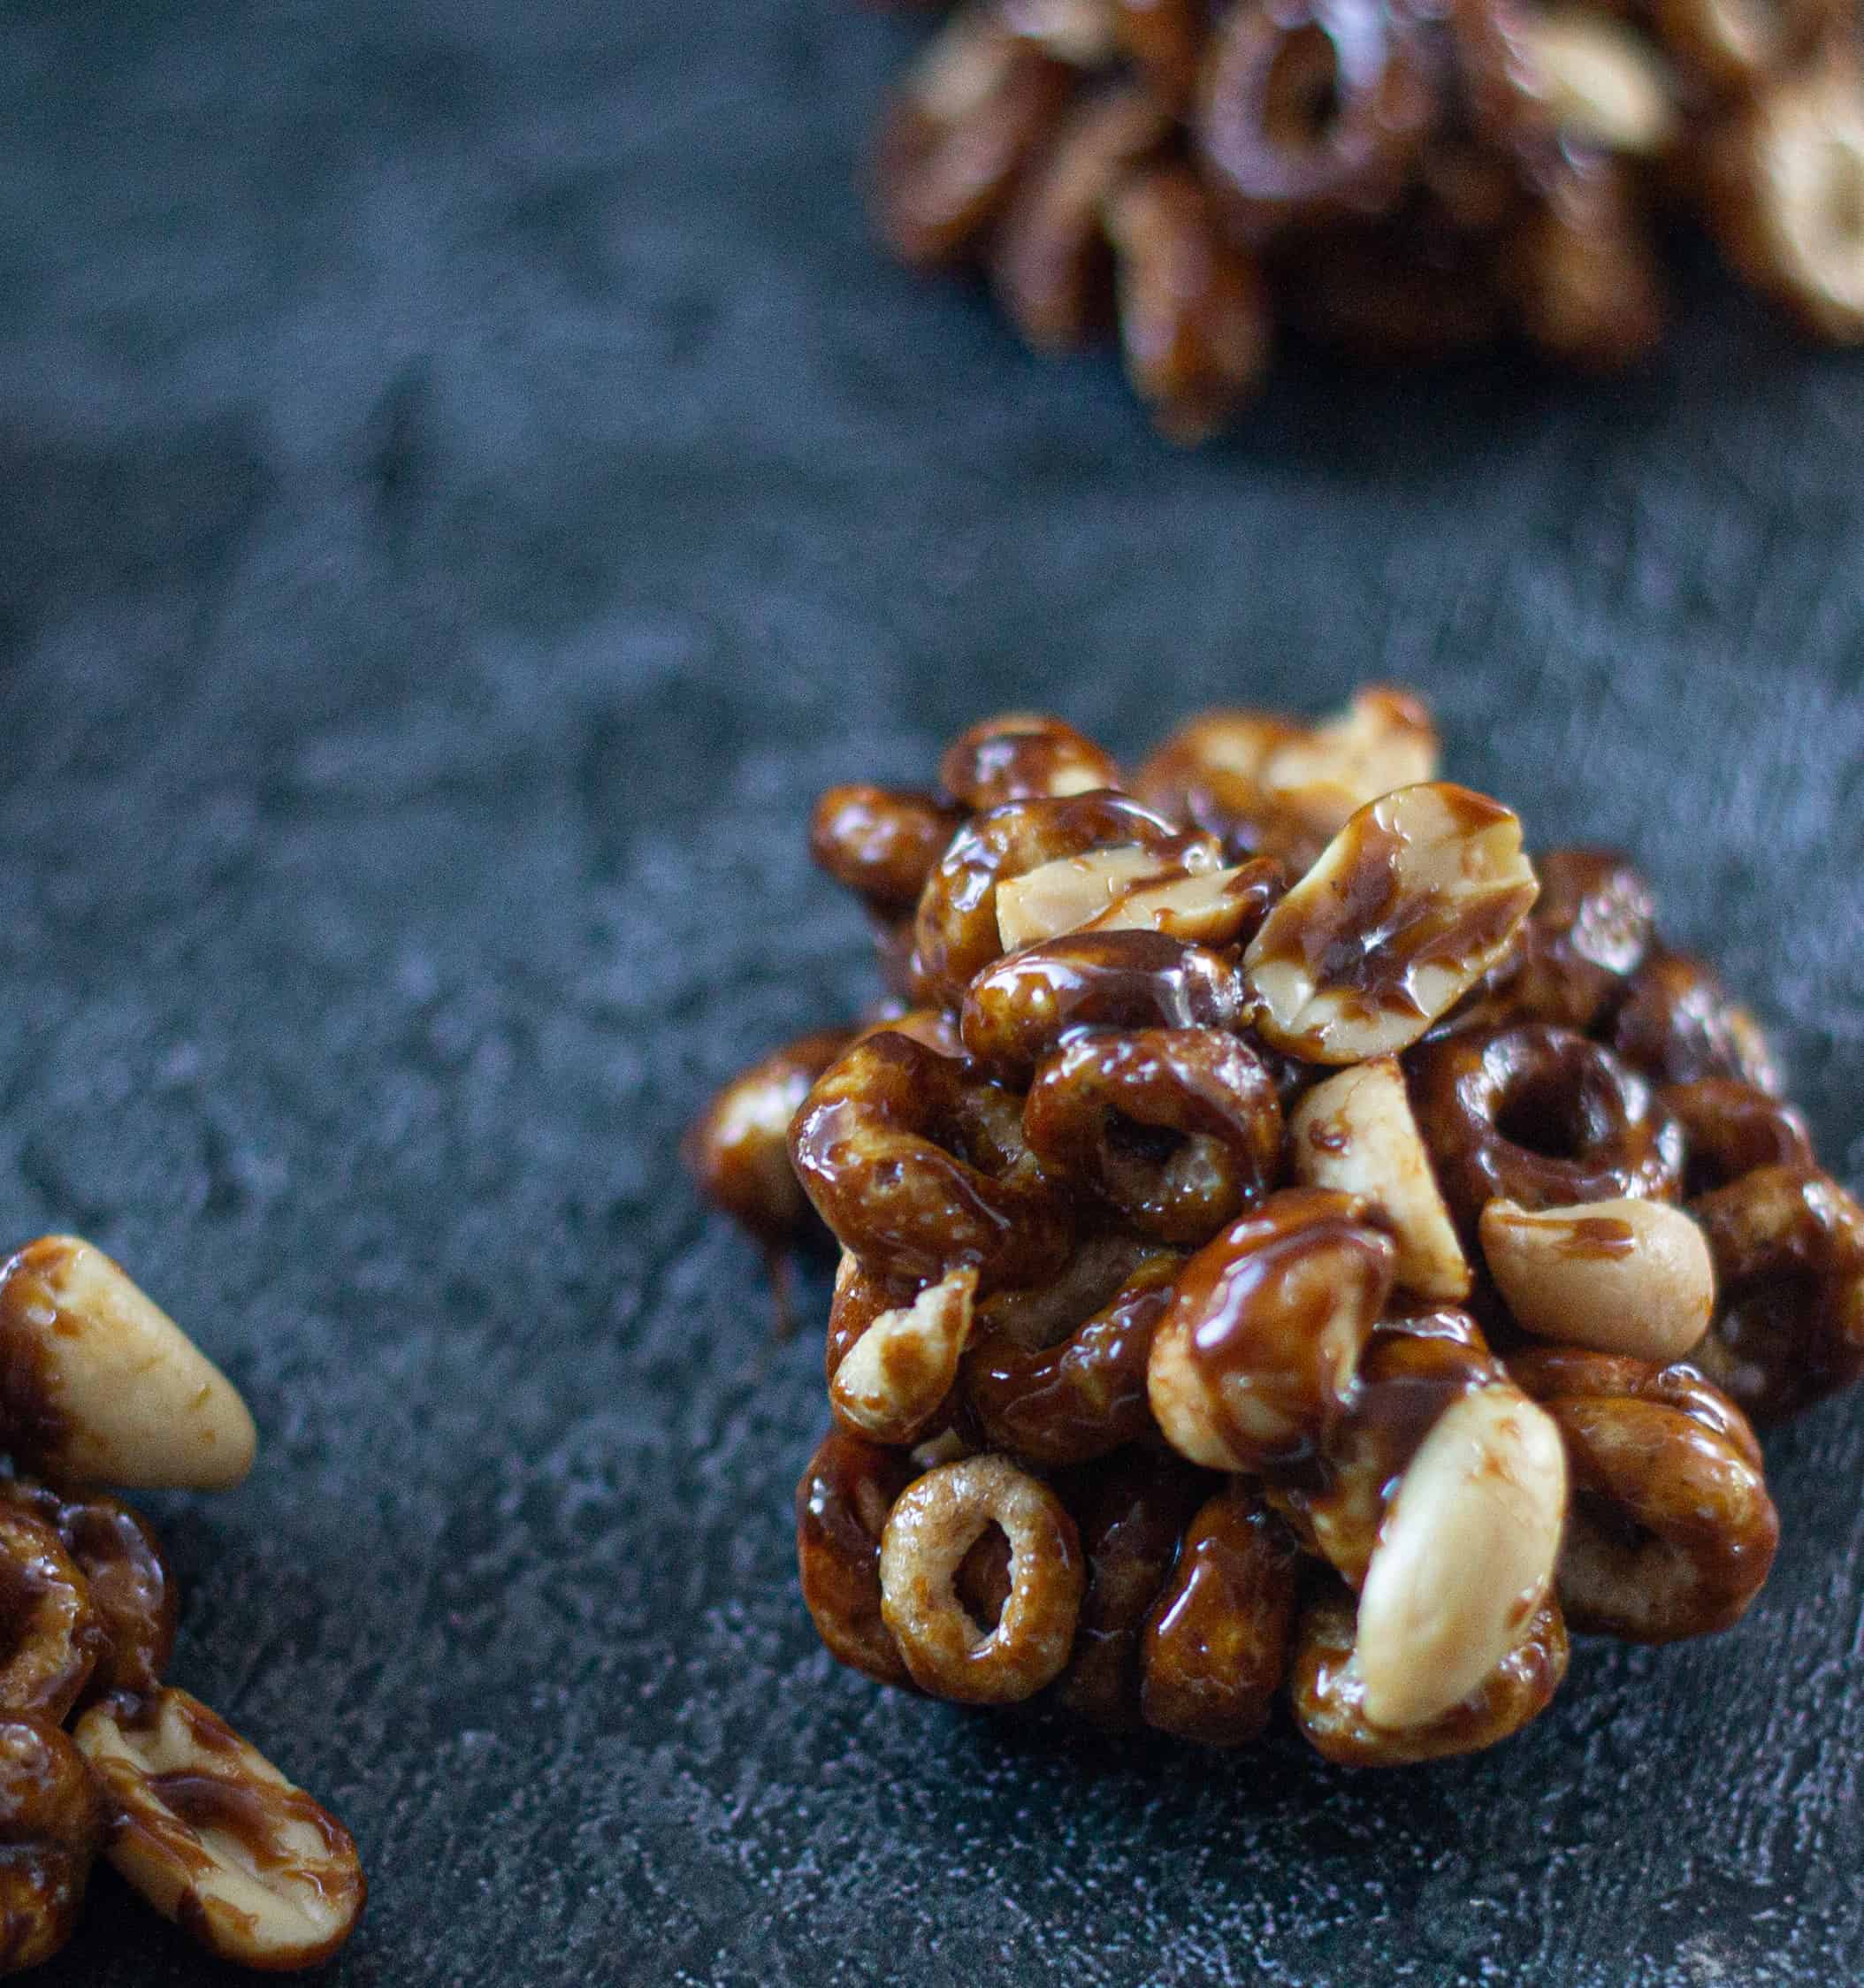 Cheerio peanut treats